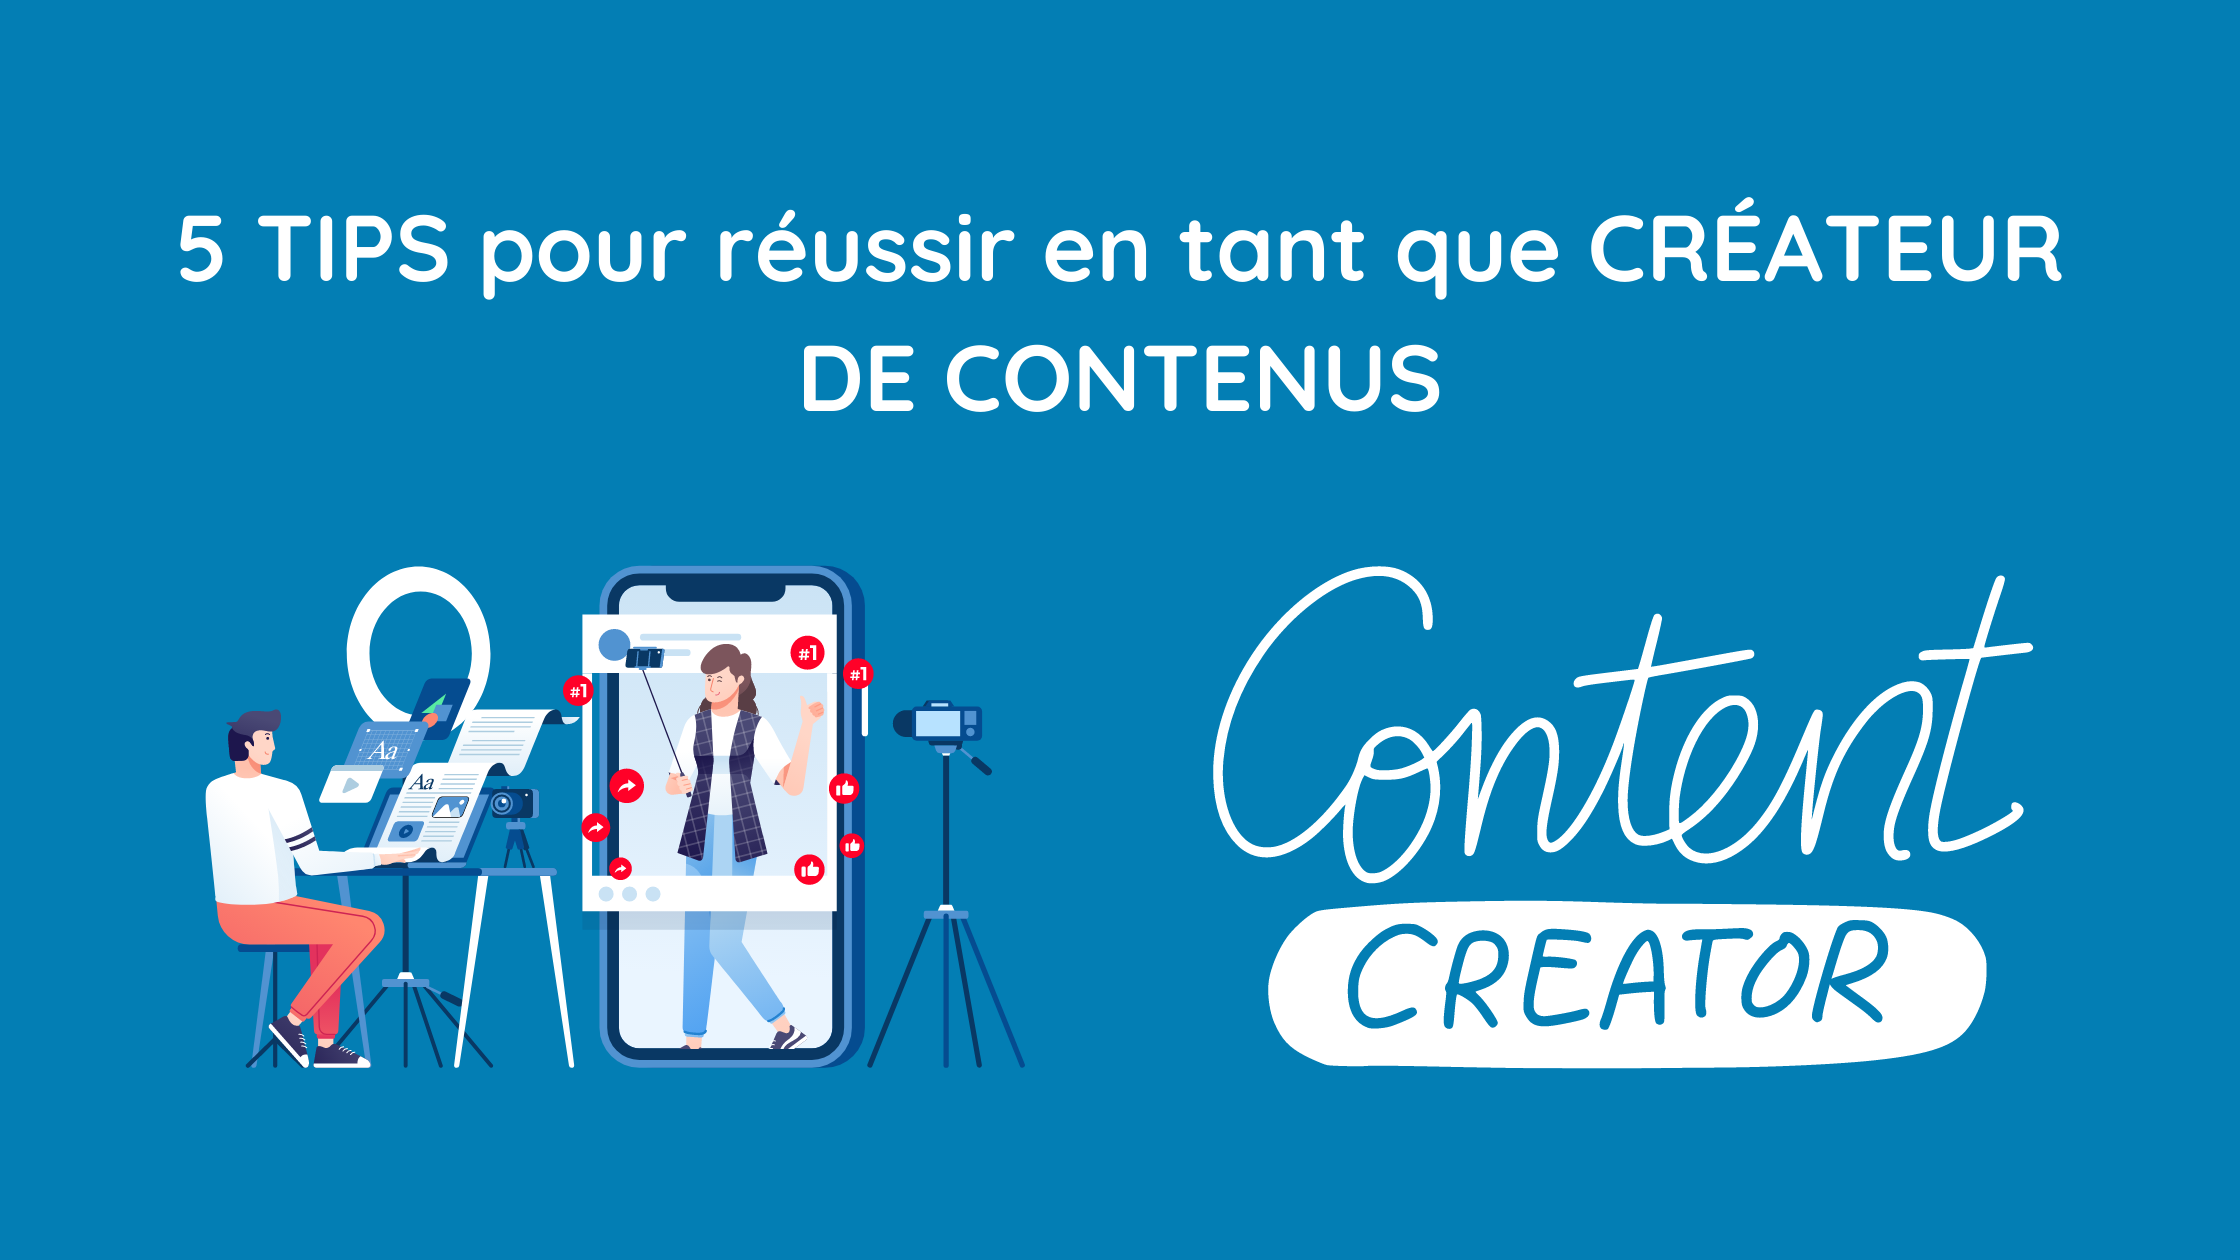 You are currently viewing 5 TIPS pour réussir en tant que CRÉATEUR DE CONTENUS !